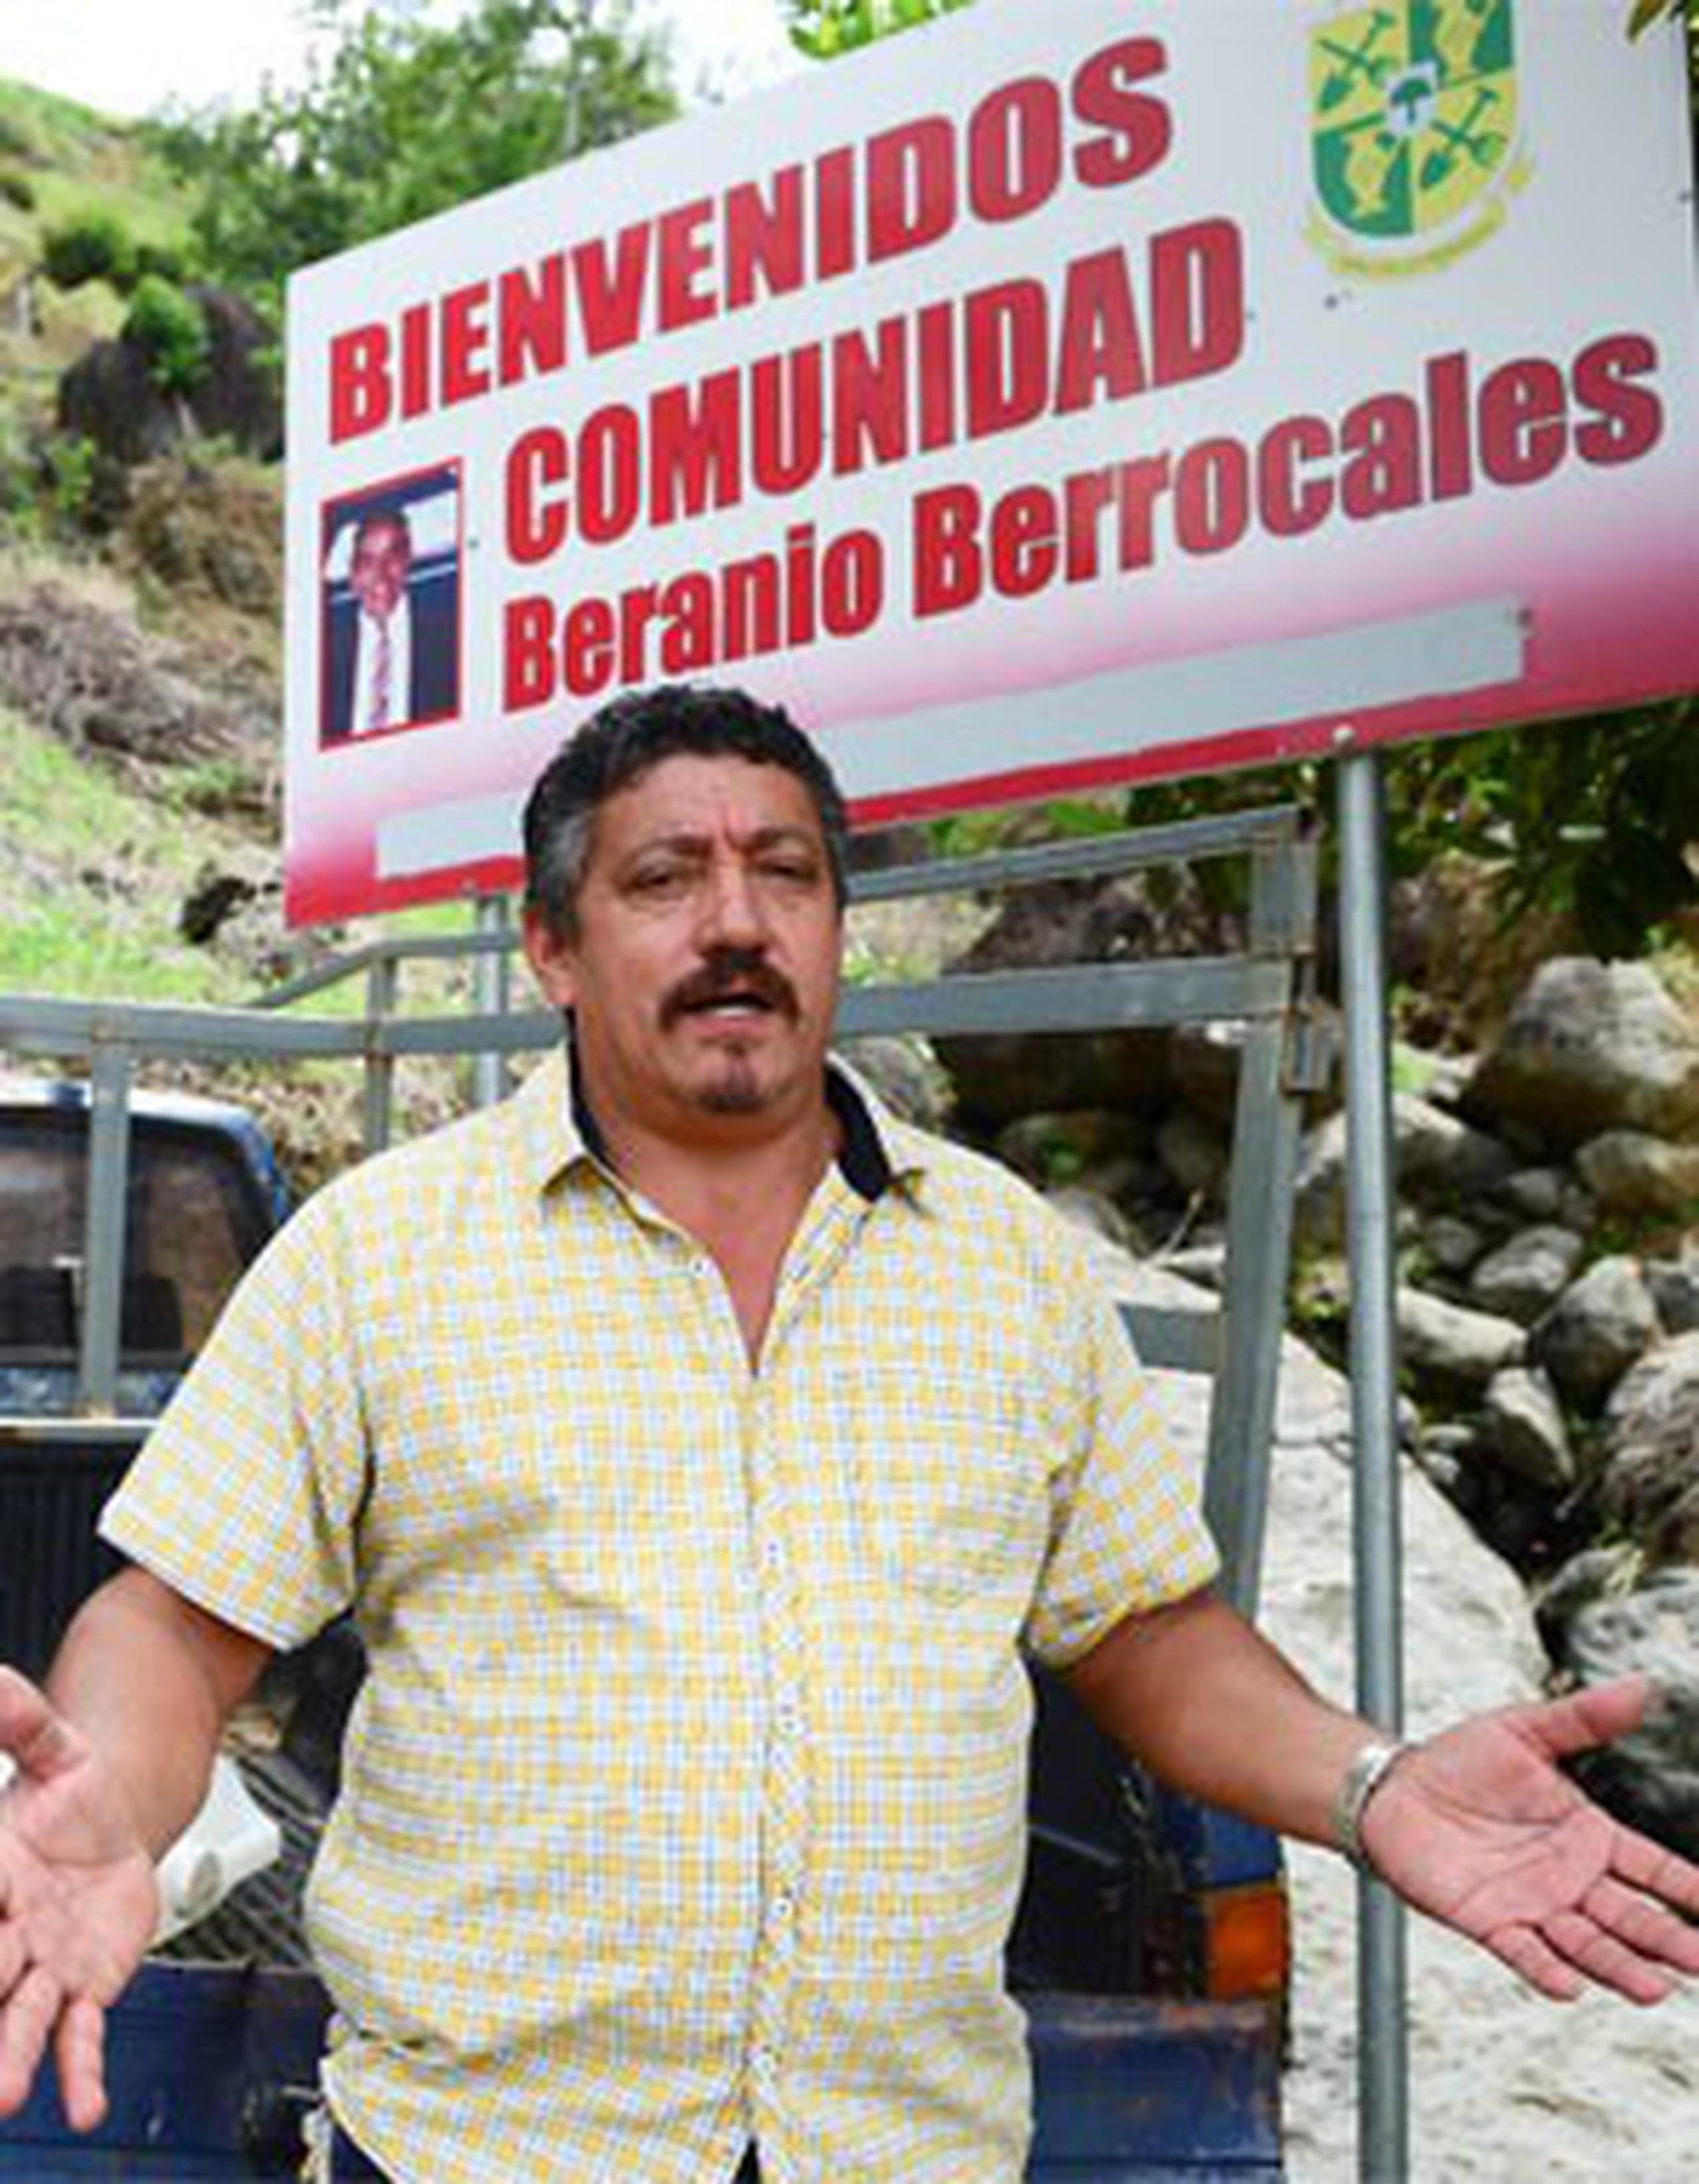 Reinaldo Berrocales Ruiz es residente del sector Pastillo, el cual que recibe todos los servicios de Sabana Grande, pero pertenece a Yauco. (tony.zayas@gfrmedia.com)